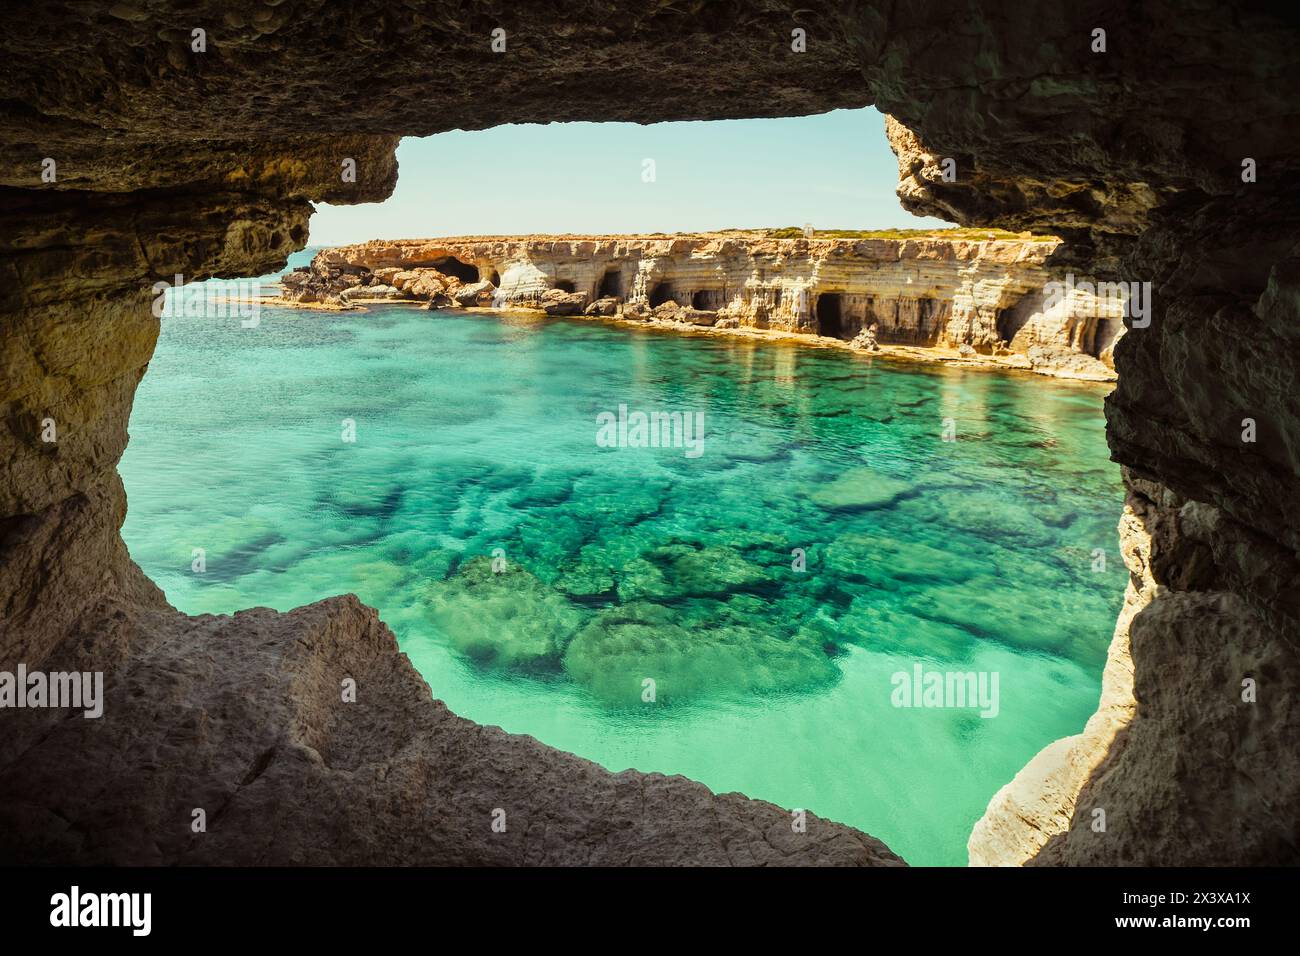 Aussichtspunkt zum Höhlenbogen in der Nähe von Kap Greko, Capo Greco, Ayia Napa und Protaras auf Zypern, Mittelmeer. Atemberaubende Meereslandschaft. Türkisfarbene Schrei Stockfoto